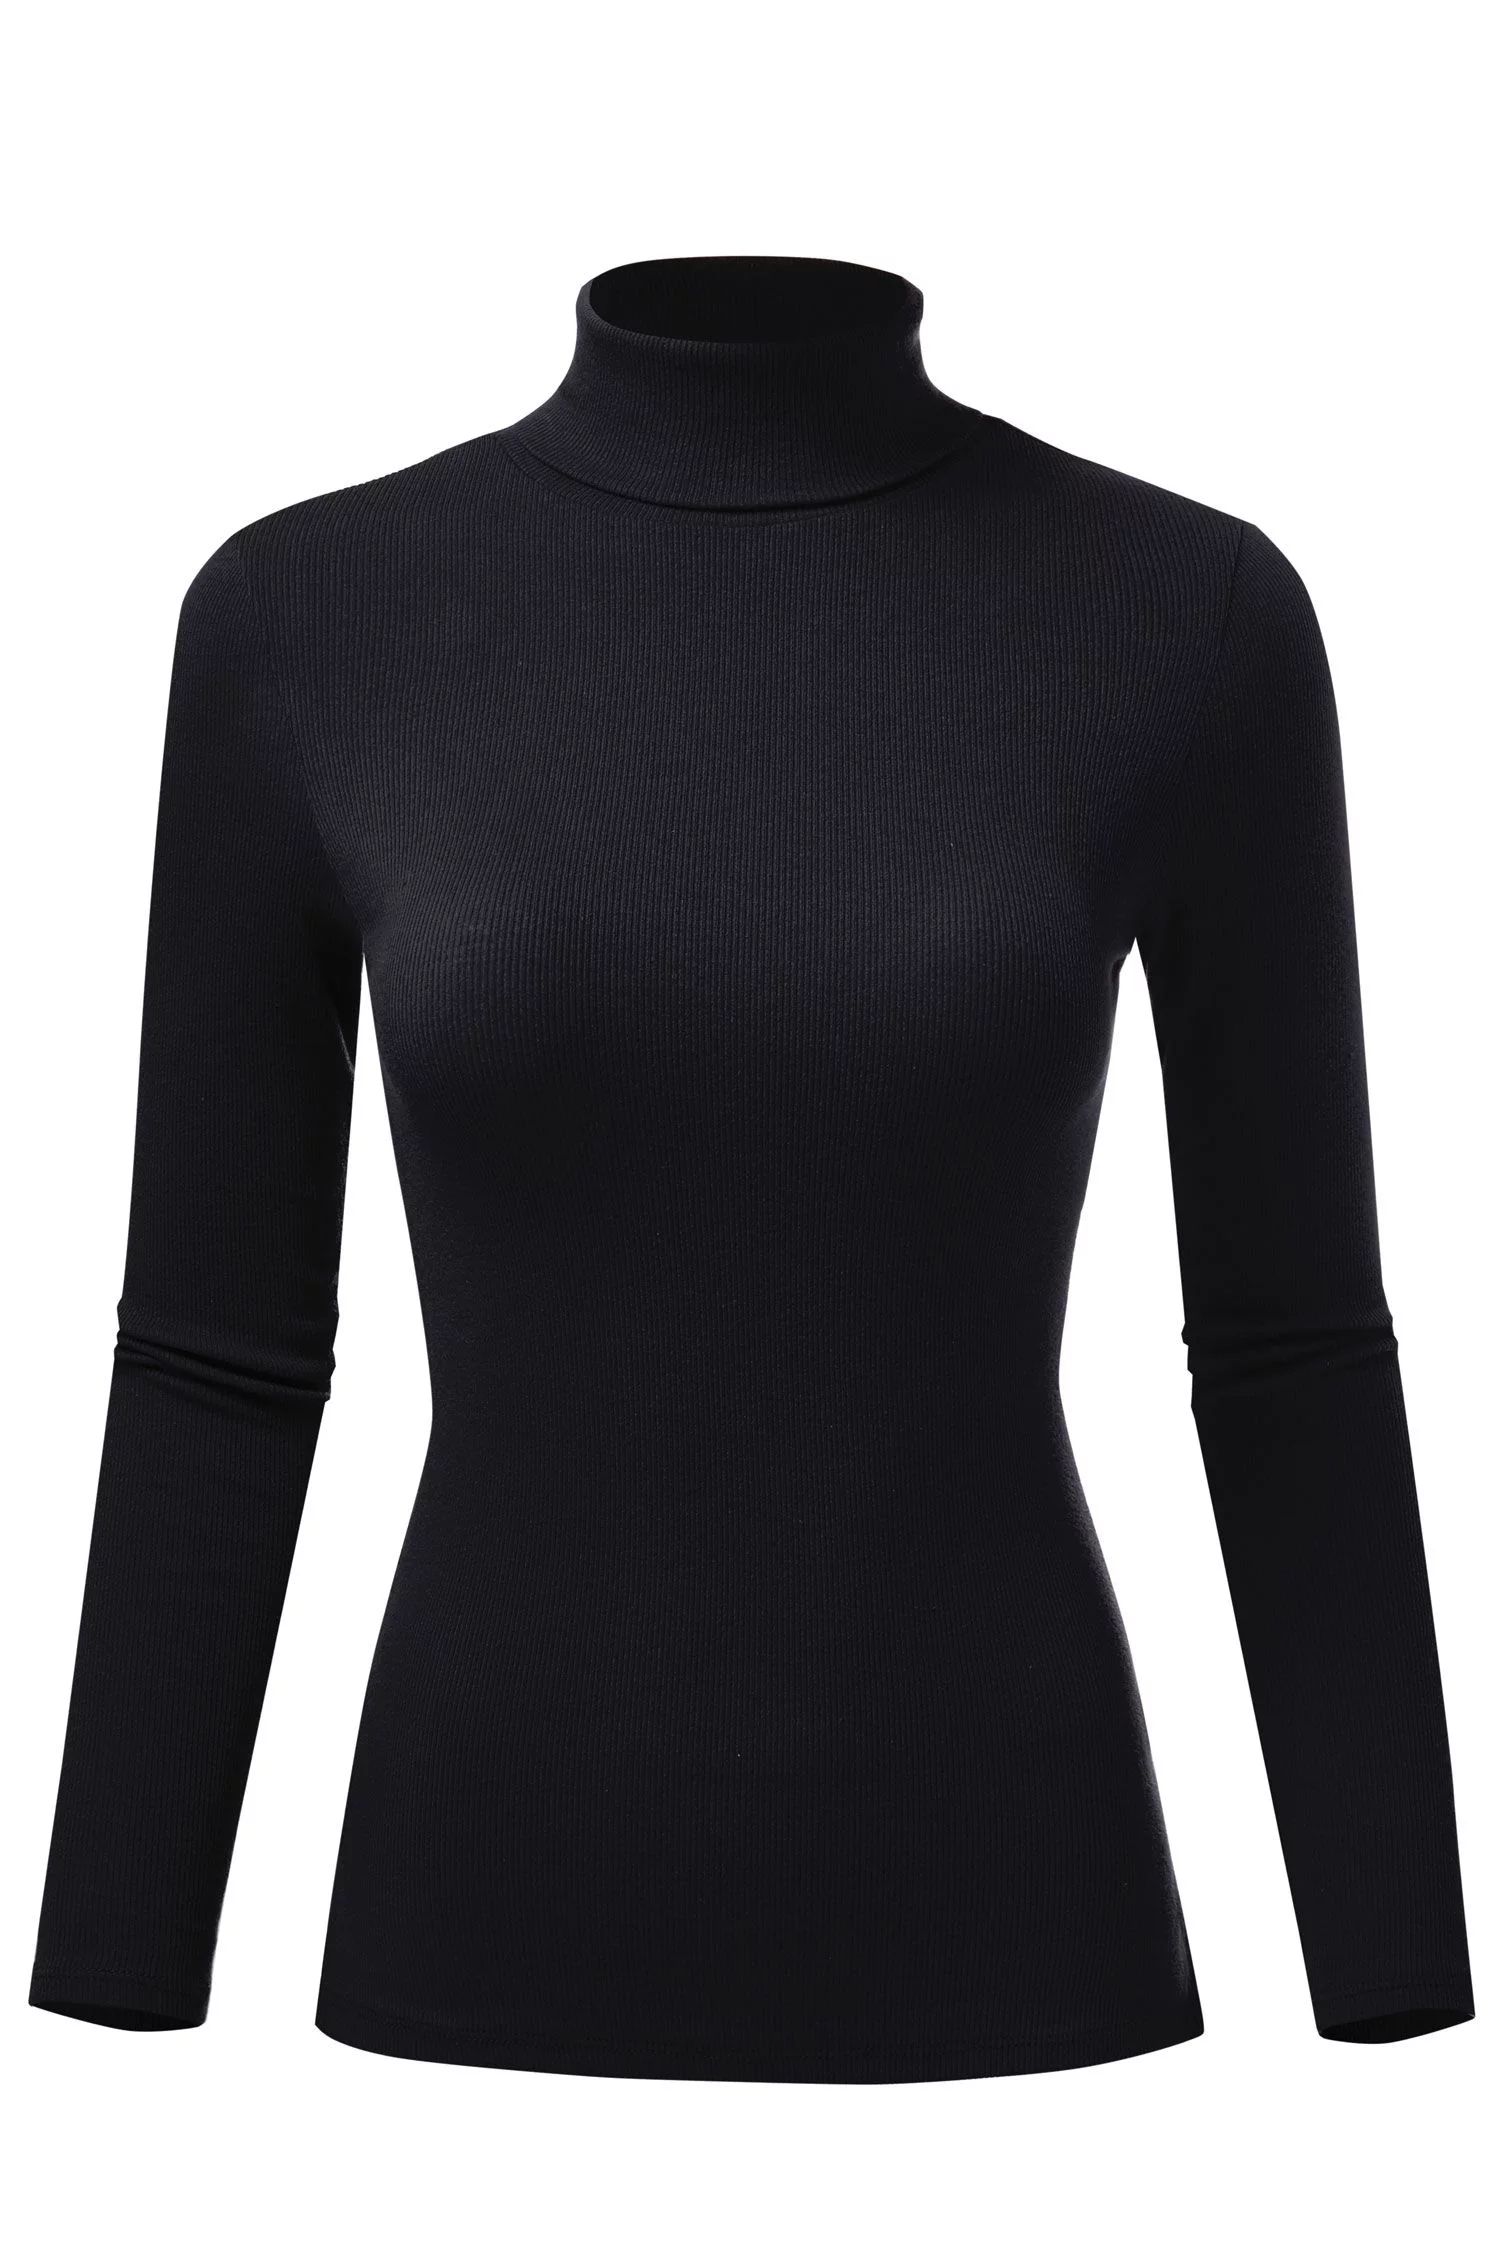 FashionMille Women's Ribbed Slim Fit Lightweight Long Sleeve Turtleneck Sweater | Walmart (US)